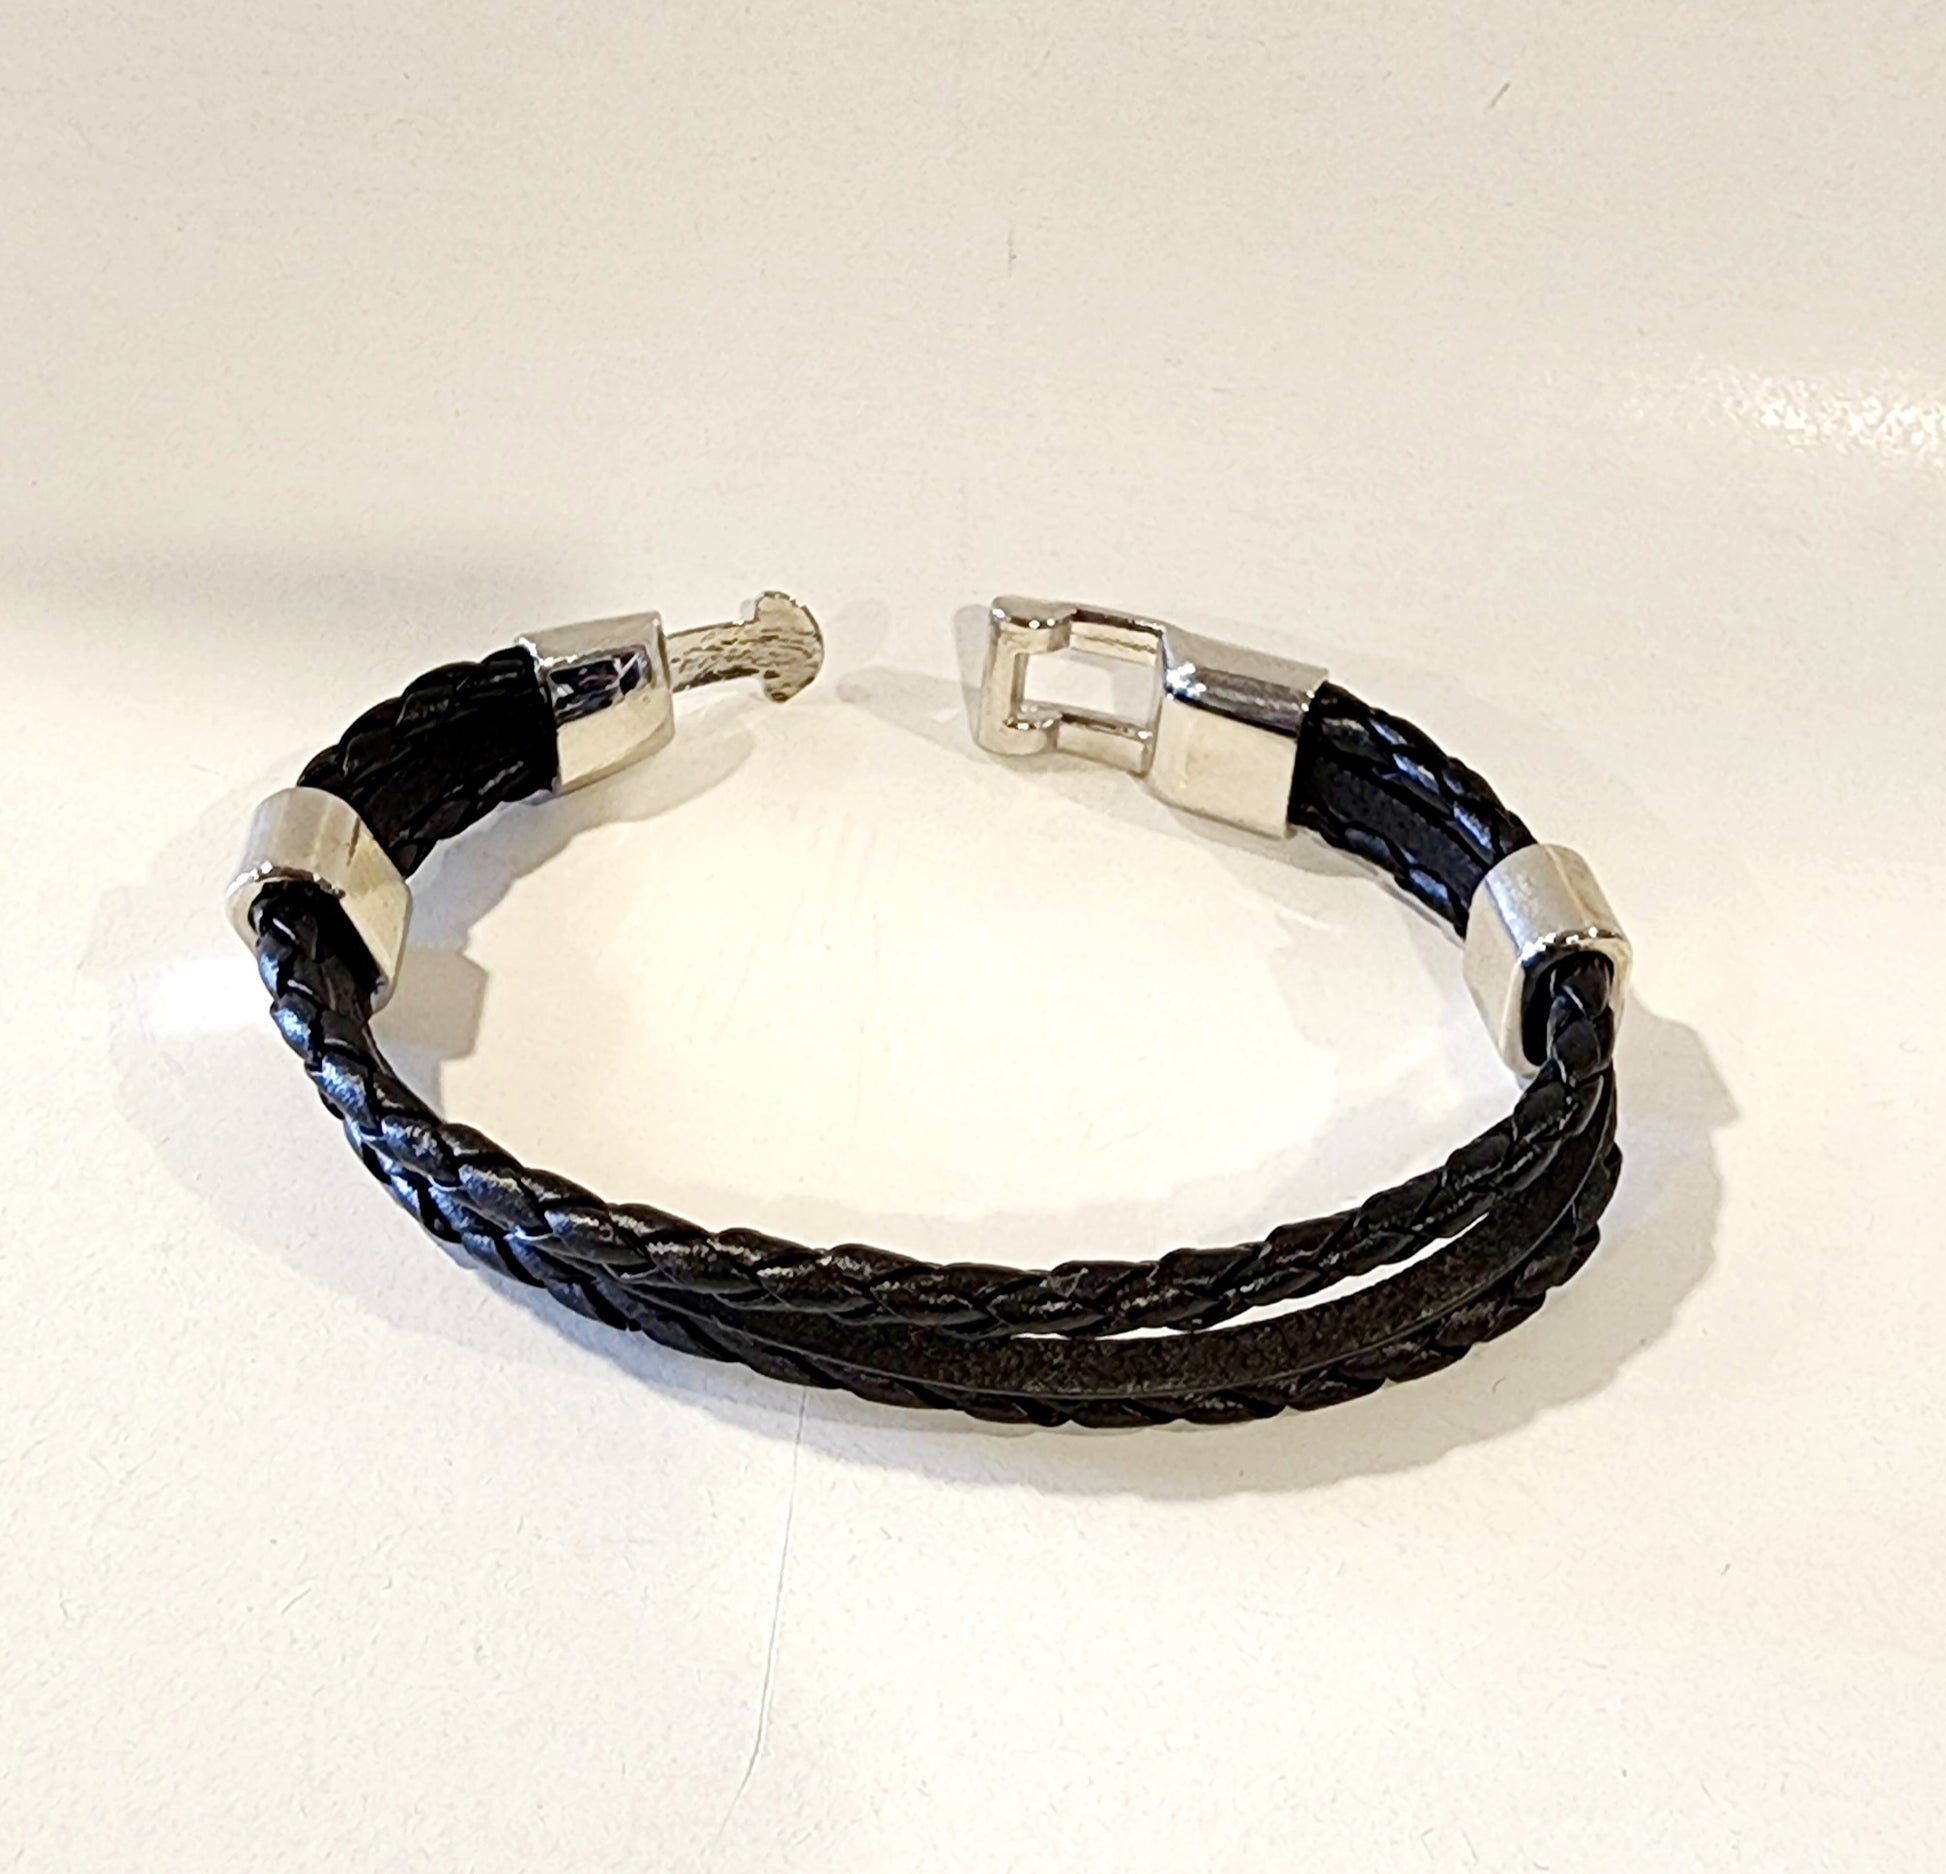 Black Men's Faux Leather Bracelet with metal Adornments